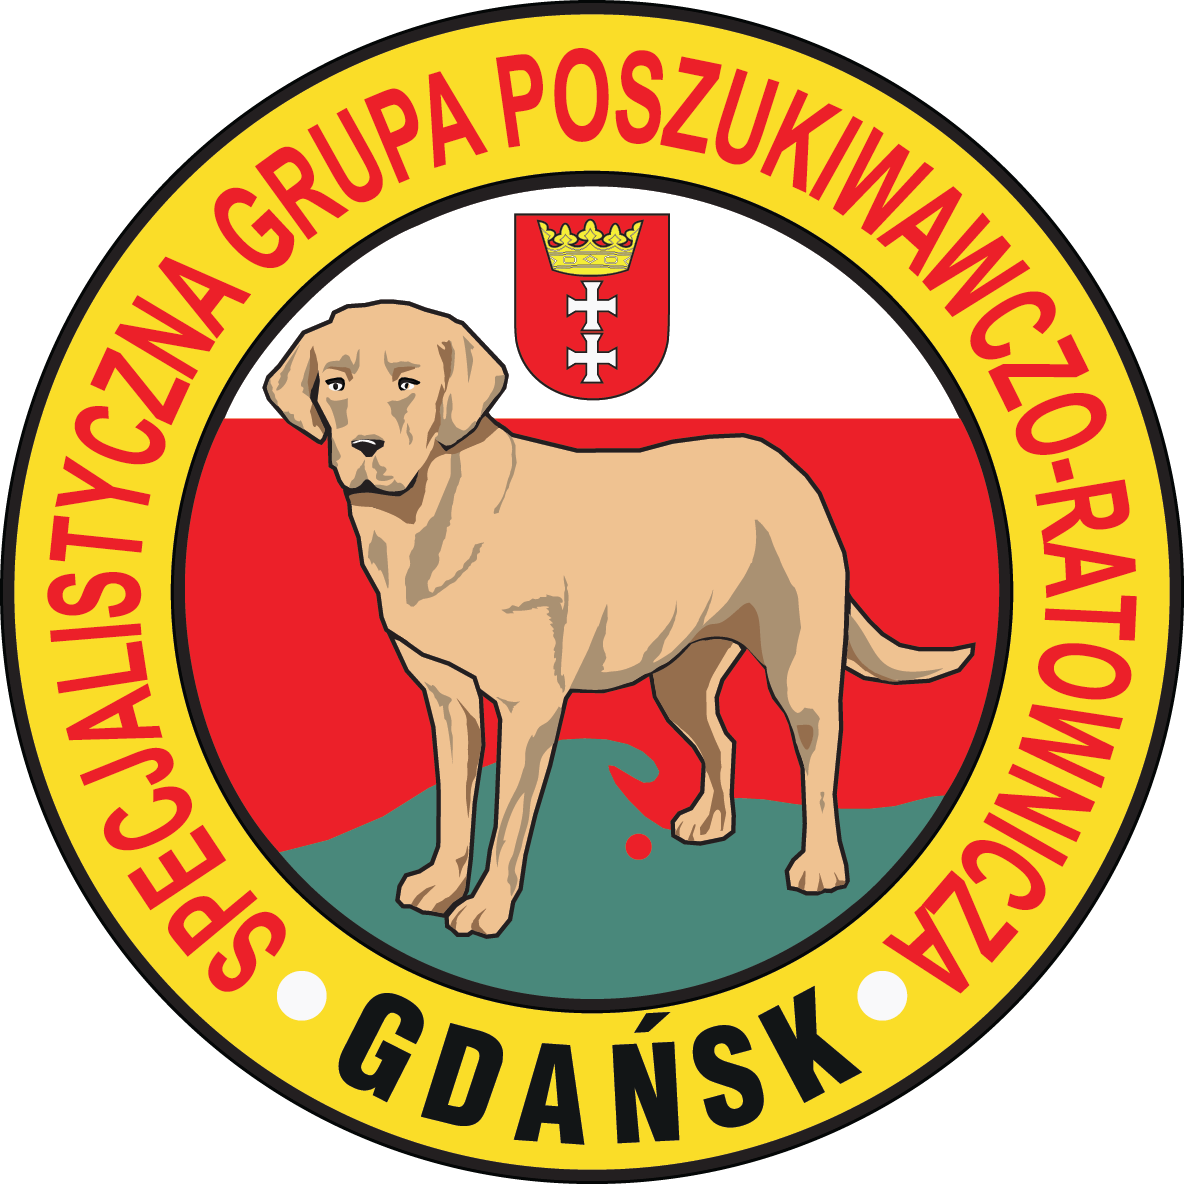 SGPR OSP Gdańsk